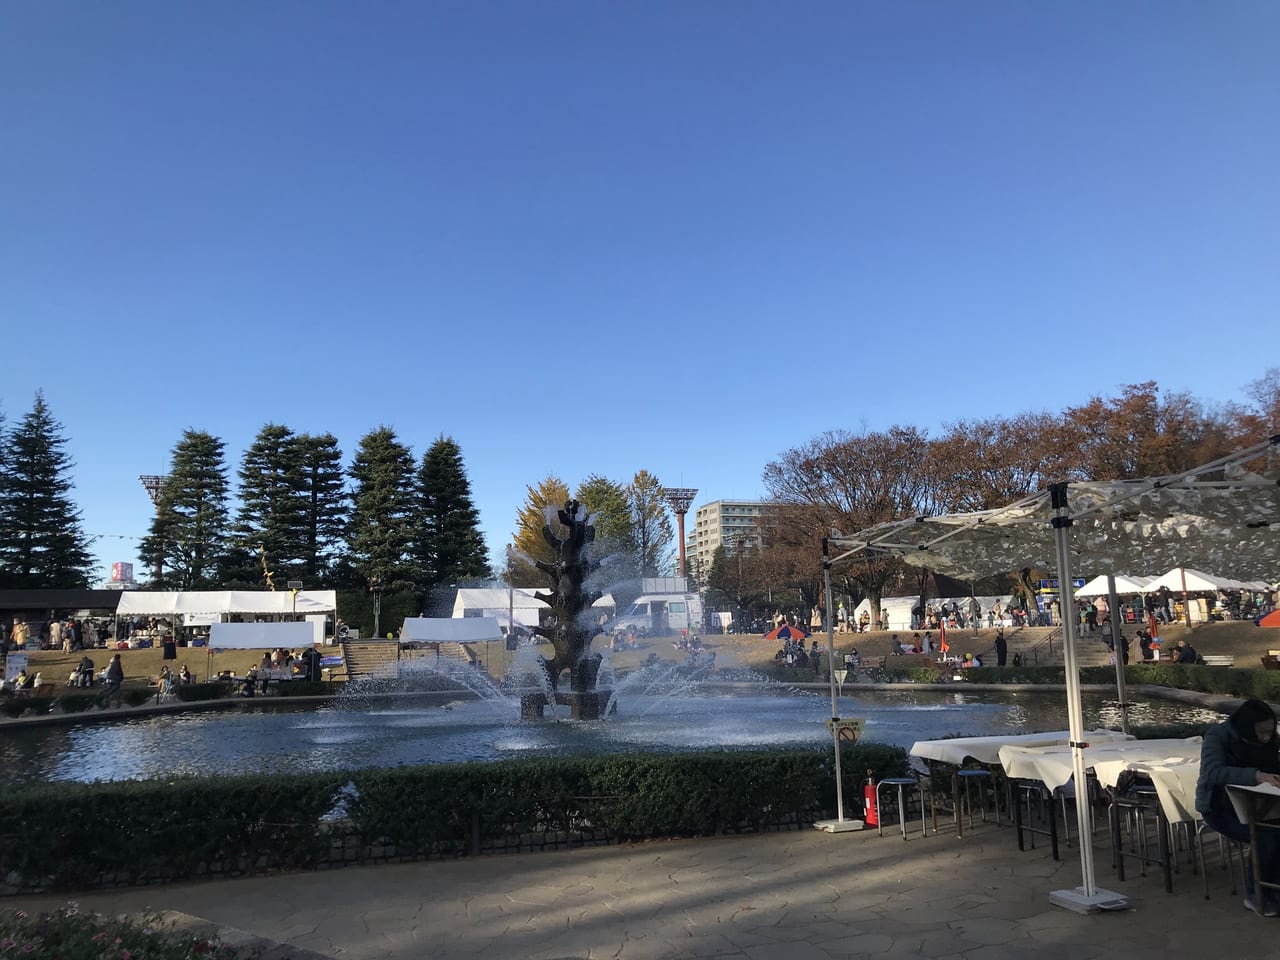 世田谷パン祭り2021が2021年11月27日、28日に世田谷公園で開催されました。